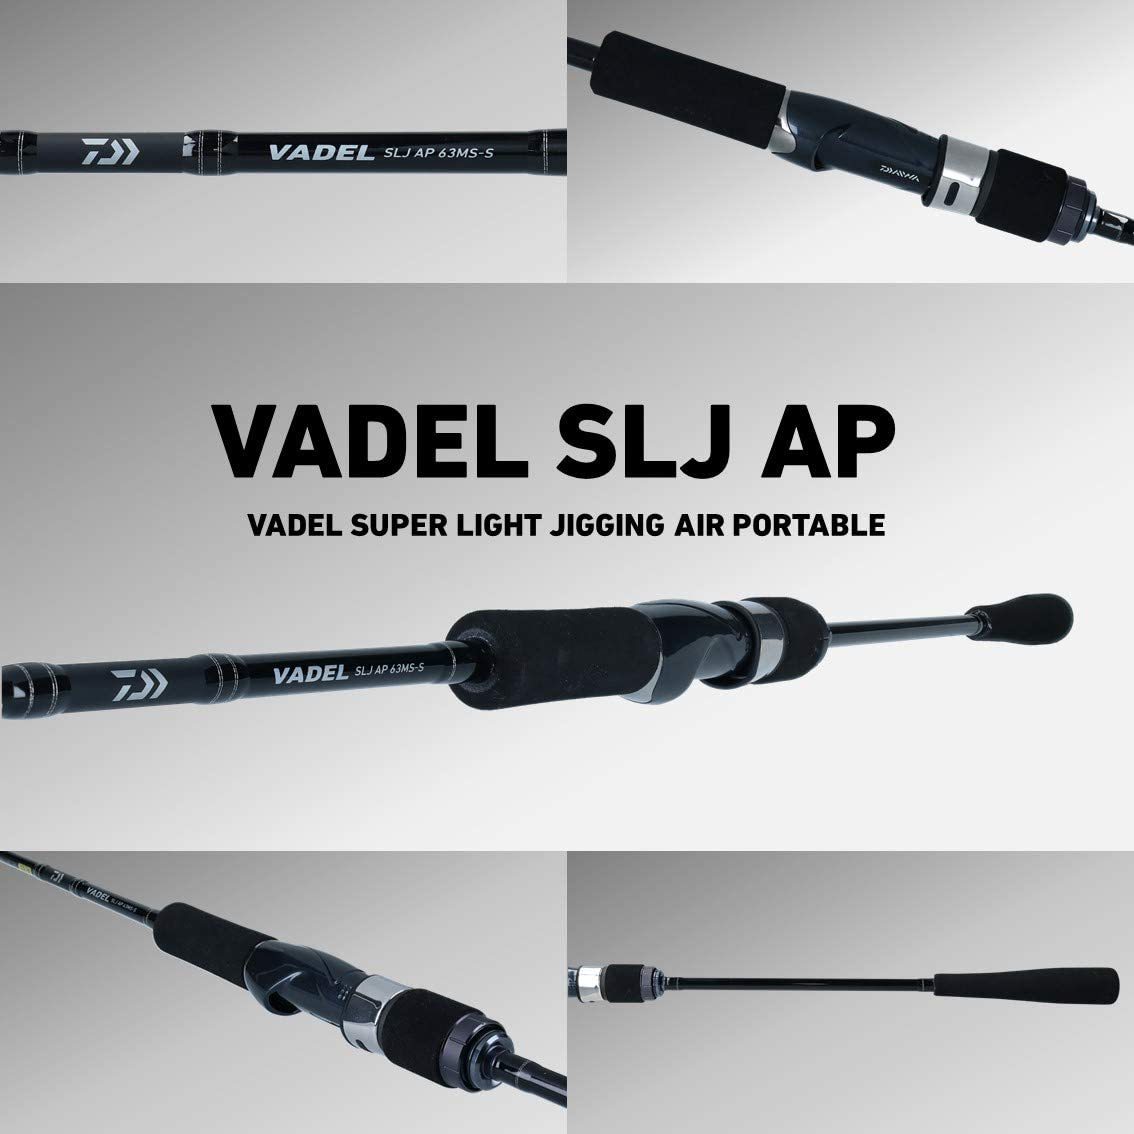 新品 ダイワ(DAIWA) VADEL(バデル) SLJ AP 63LS-S(スピニング